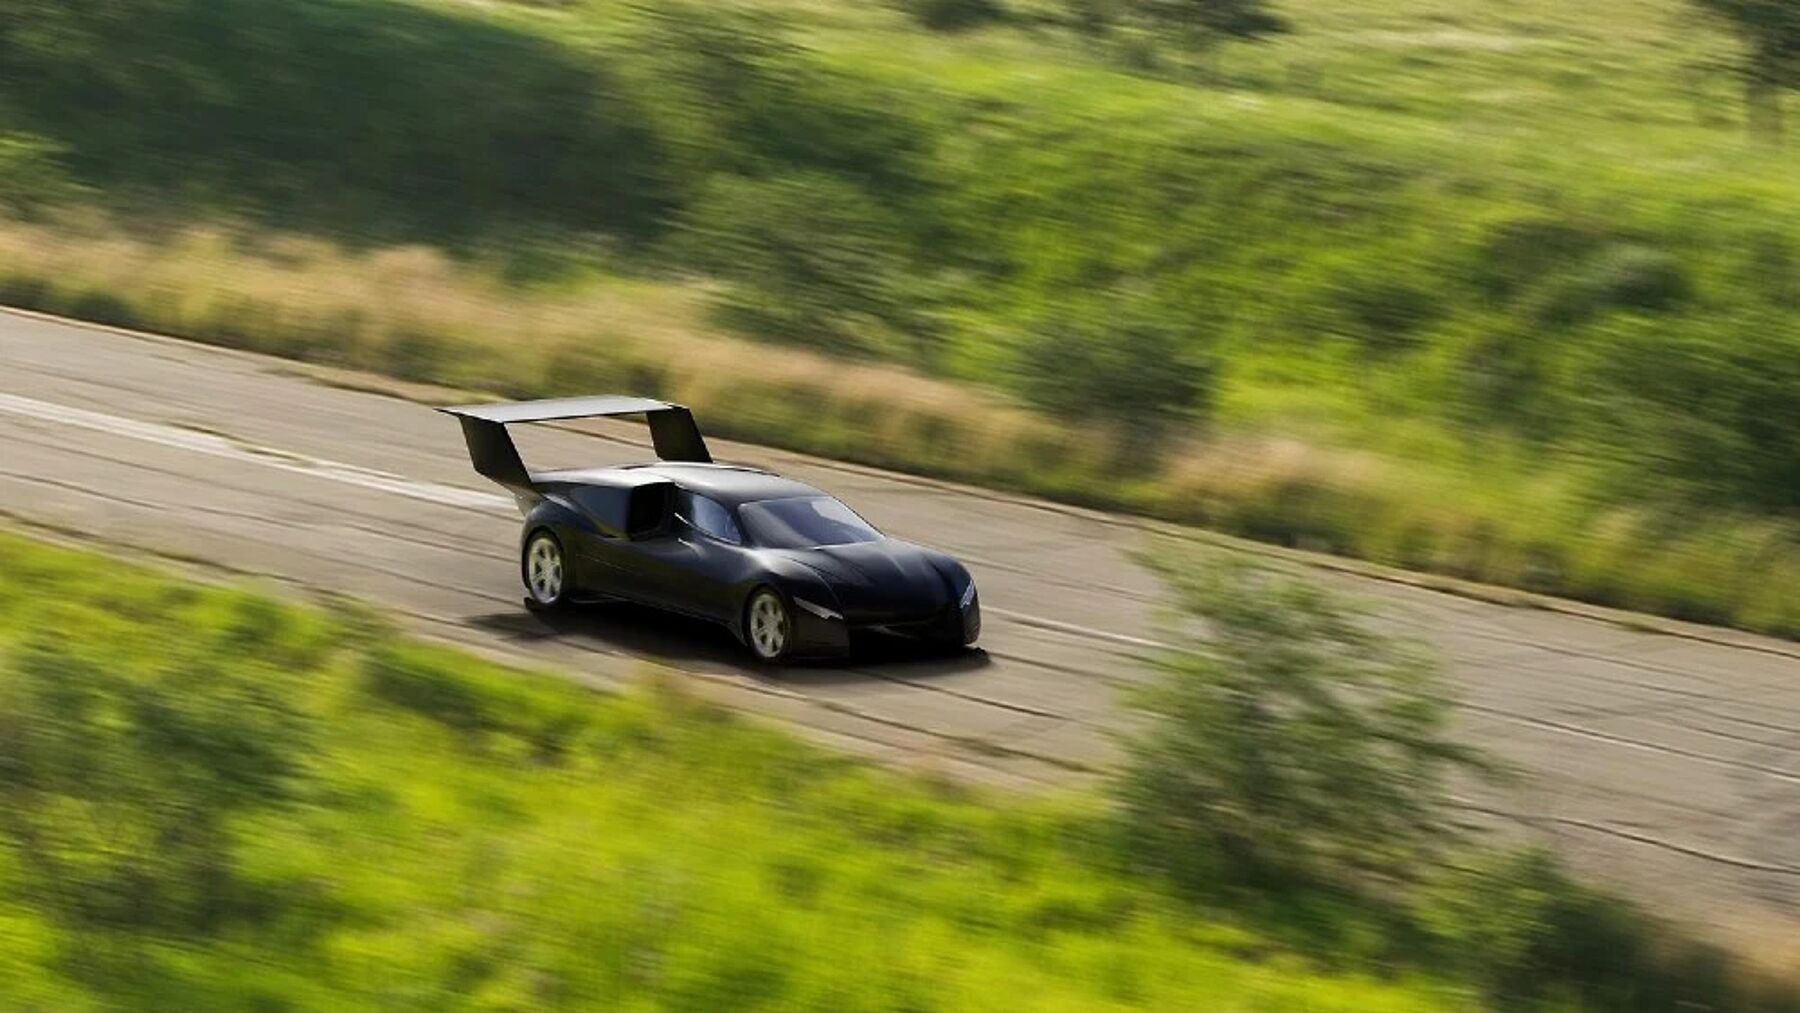 Летающий суперкар в стиле Bugatti: в США представили машину будущего,  которая передвигается по земле и по воздуху